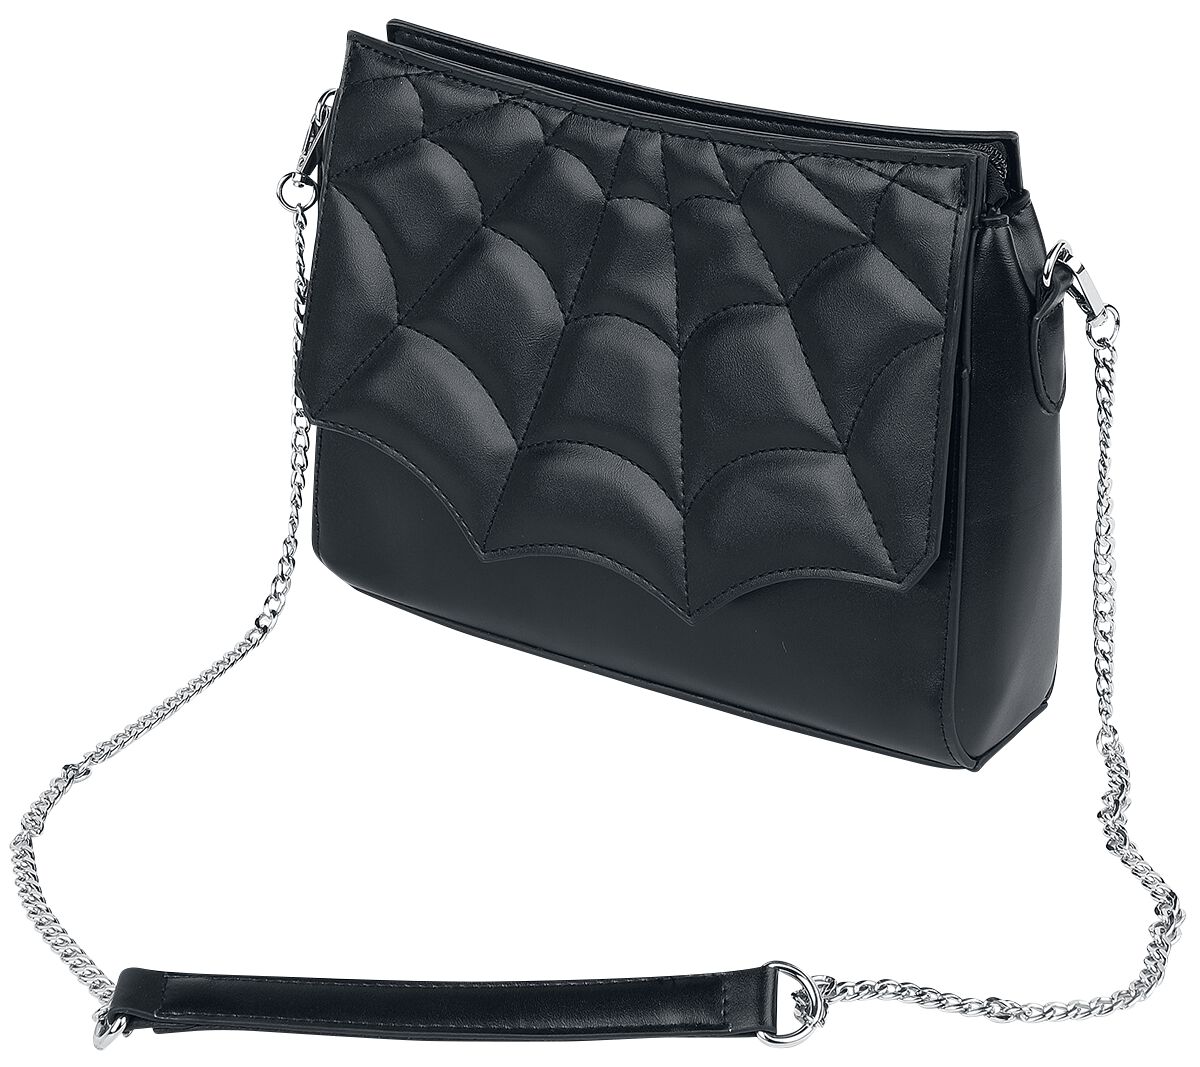 Banned Alternative Handtasche - Mabris Shoulder Bag - für Damen - schwarz/silberfarben